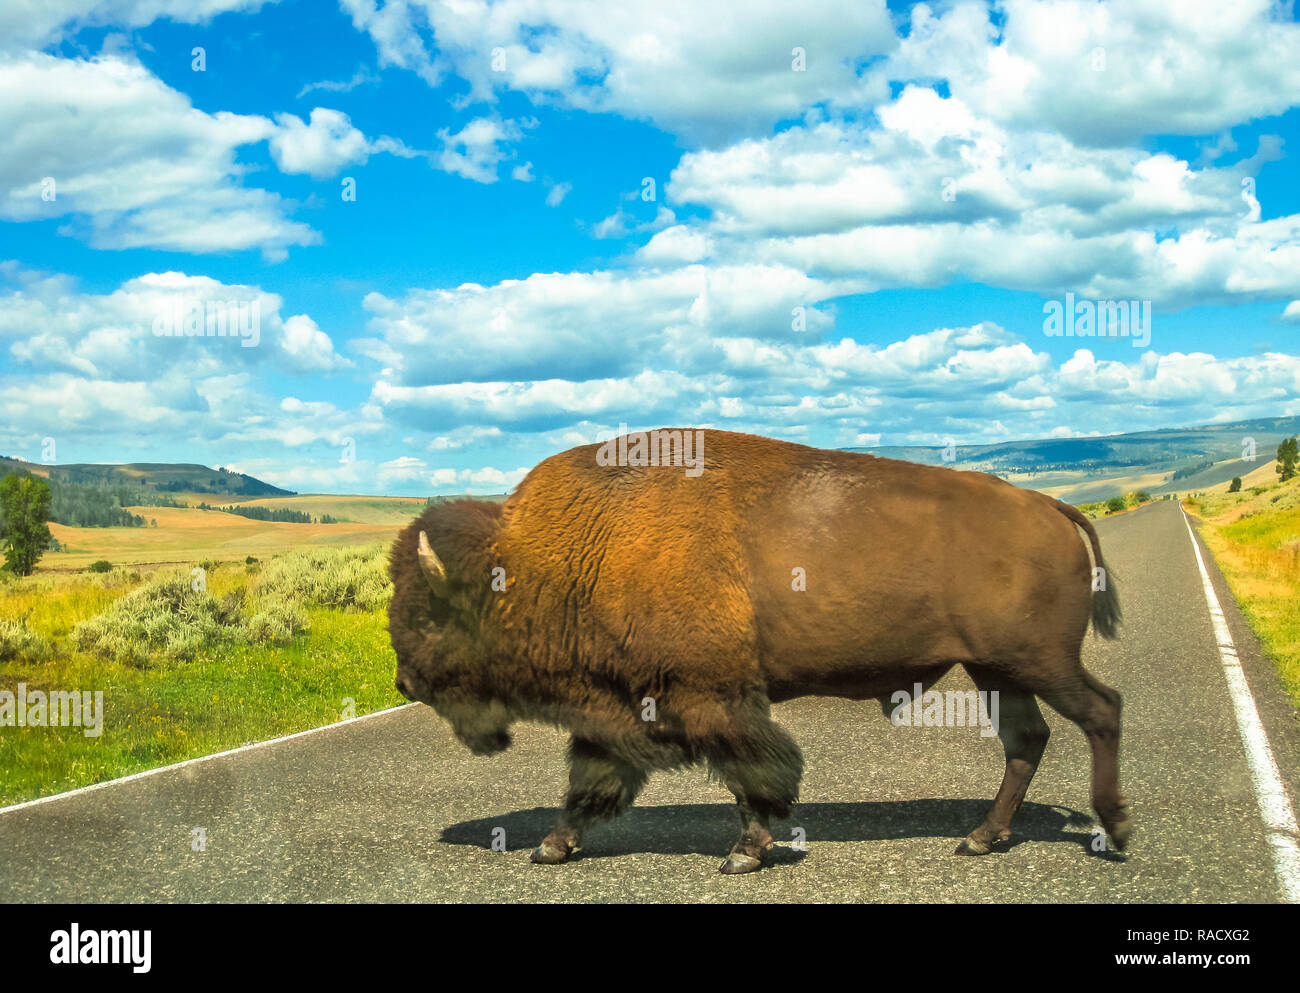 Vista laterale di adulto bufalo americano attraversando la strada presso il Parco Nazionale di Yellowstone, Wyoming Montana e Idaho, Stati Uniti. Il Bison è un simbolo del West americano. Stagione estiva con cielo molto nuvoloso Foto Stock